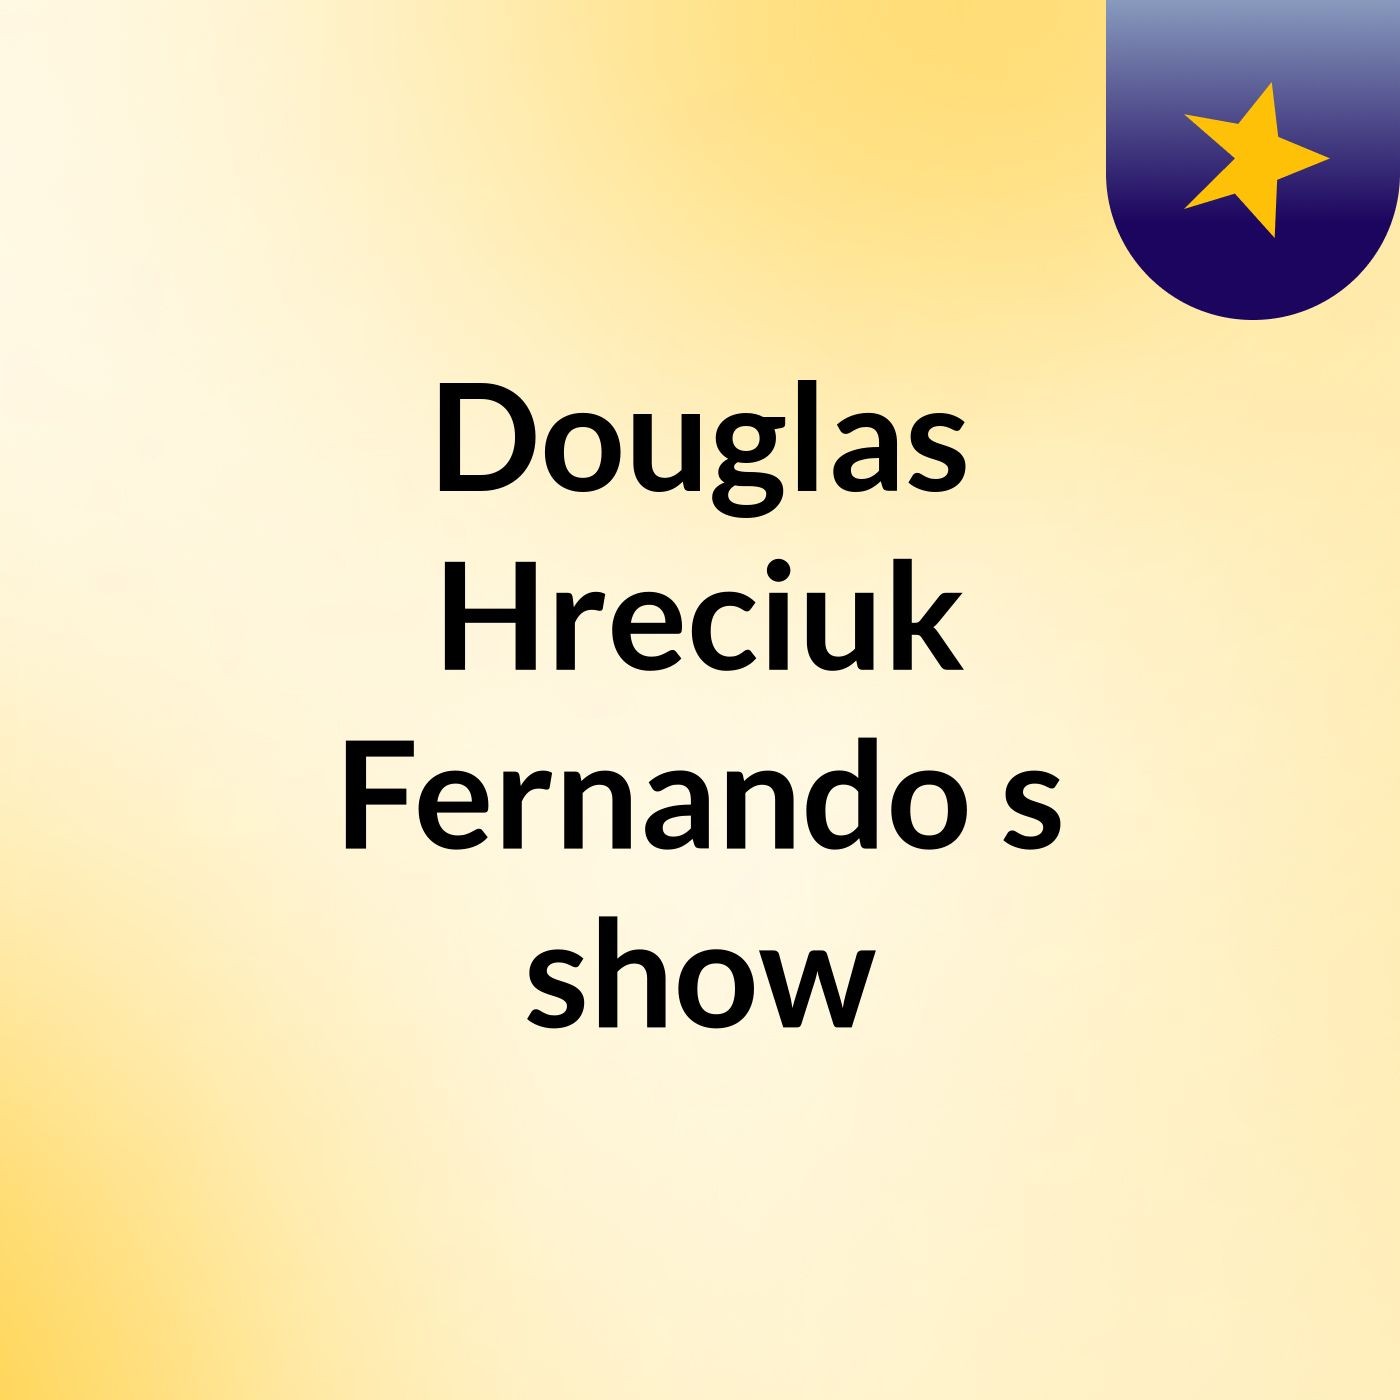 Douglas Hreciuk Fernando's show